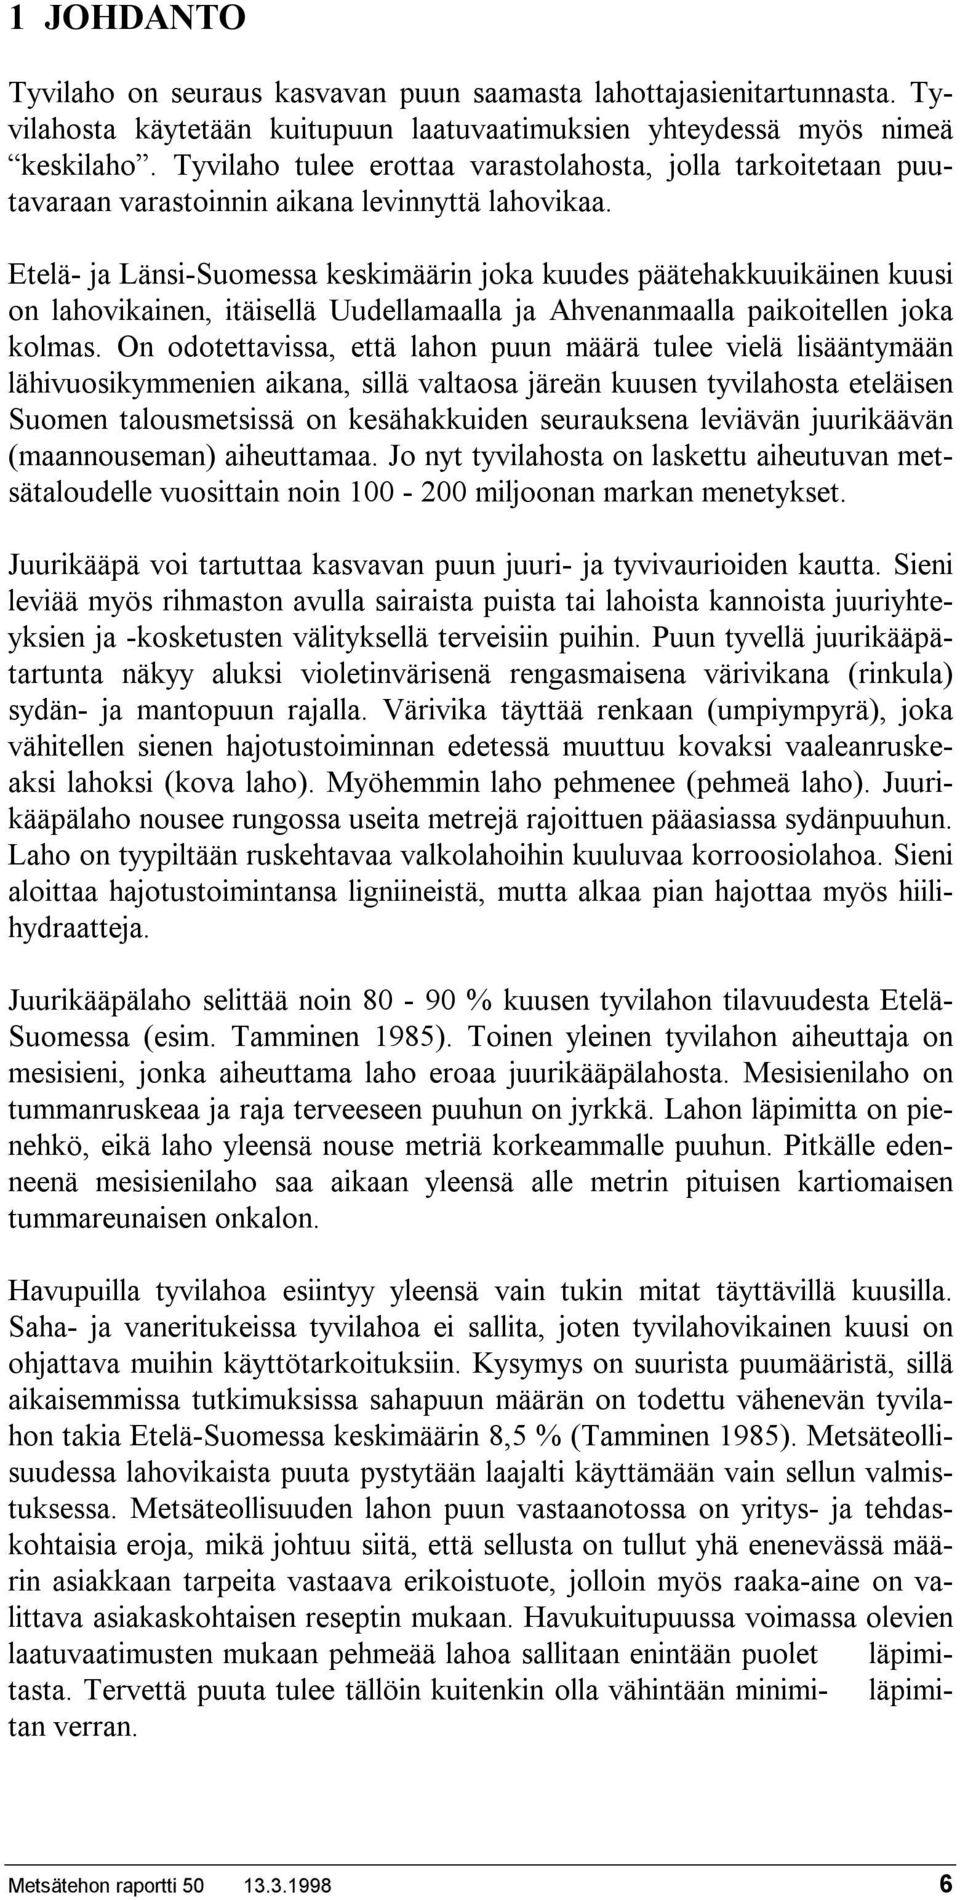 Etelä- ja Länsi-Suomessa keskimäärin joka kuudes päätehakkuuikäinen kuusi on lahovikainen, itäisellä Uudellamaalla ja Ahvenanmaalla paikoitellen joka kolmas.